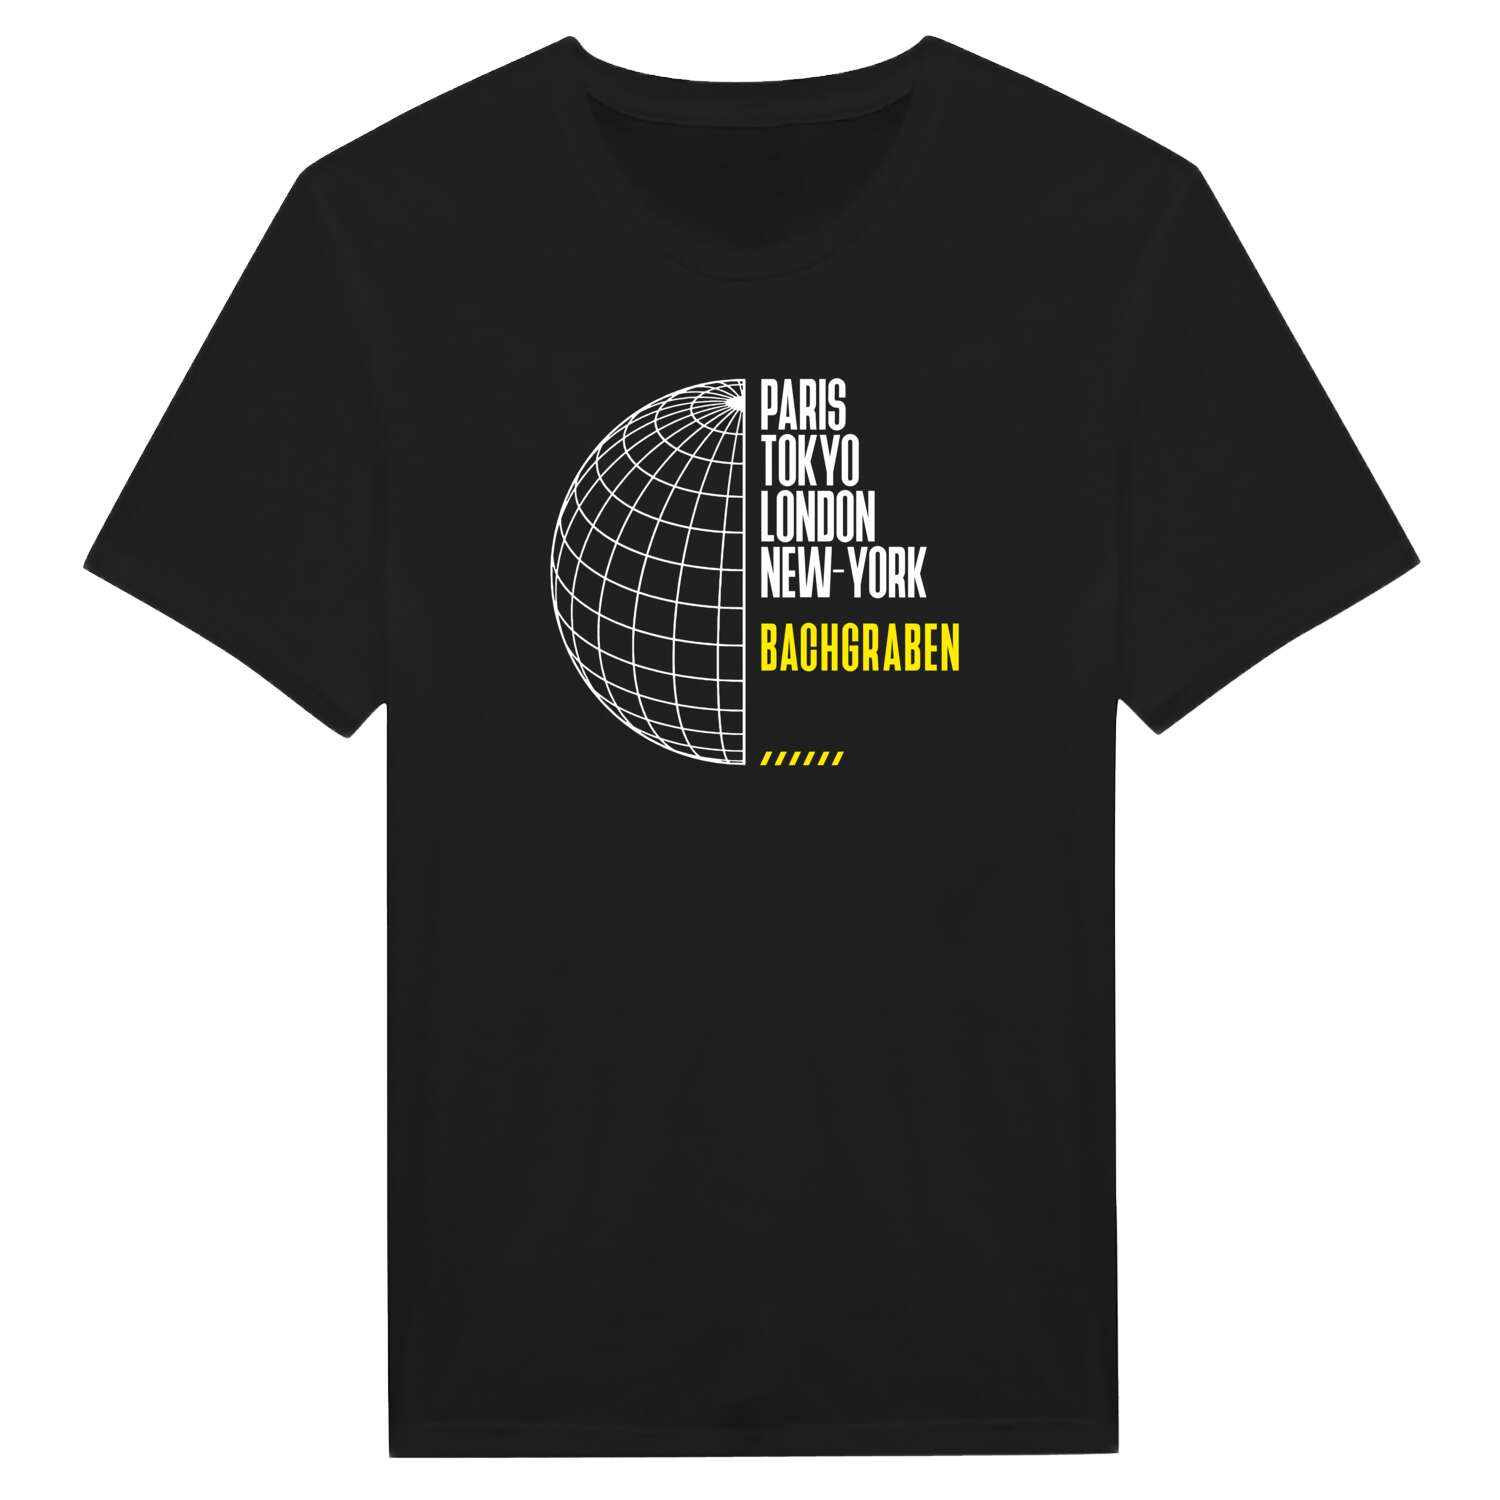 Bachgraben T-Shirt »Paris Tokyo London«